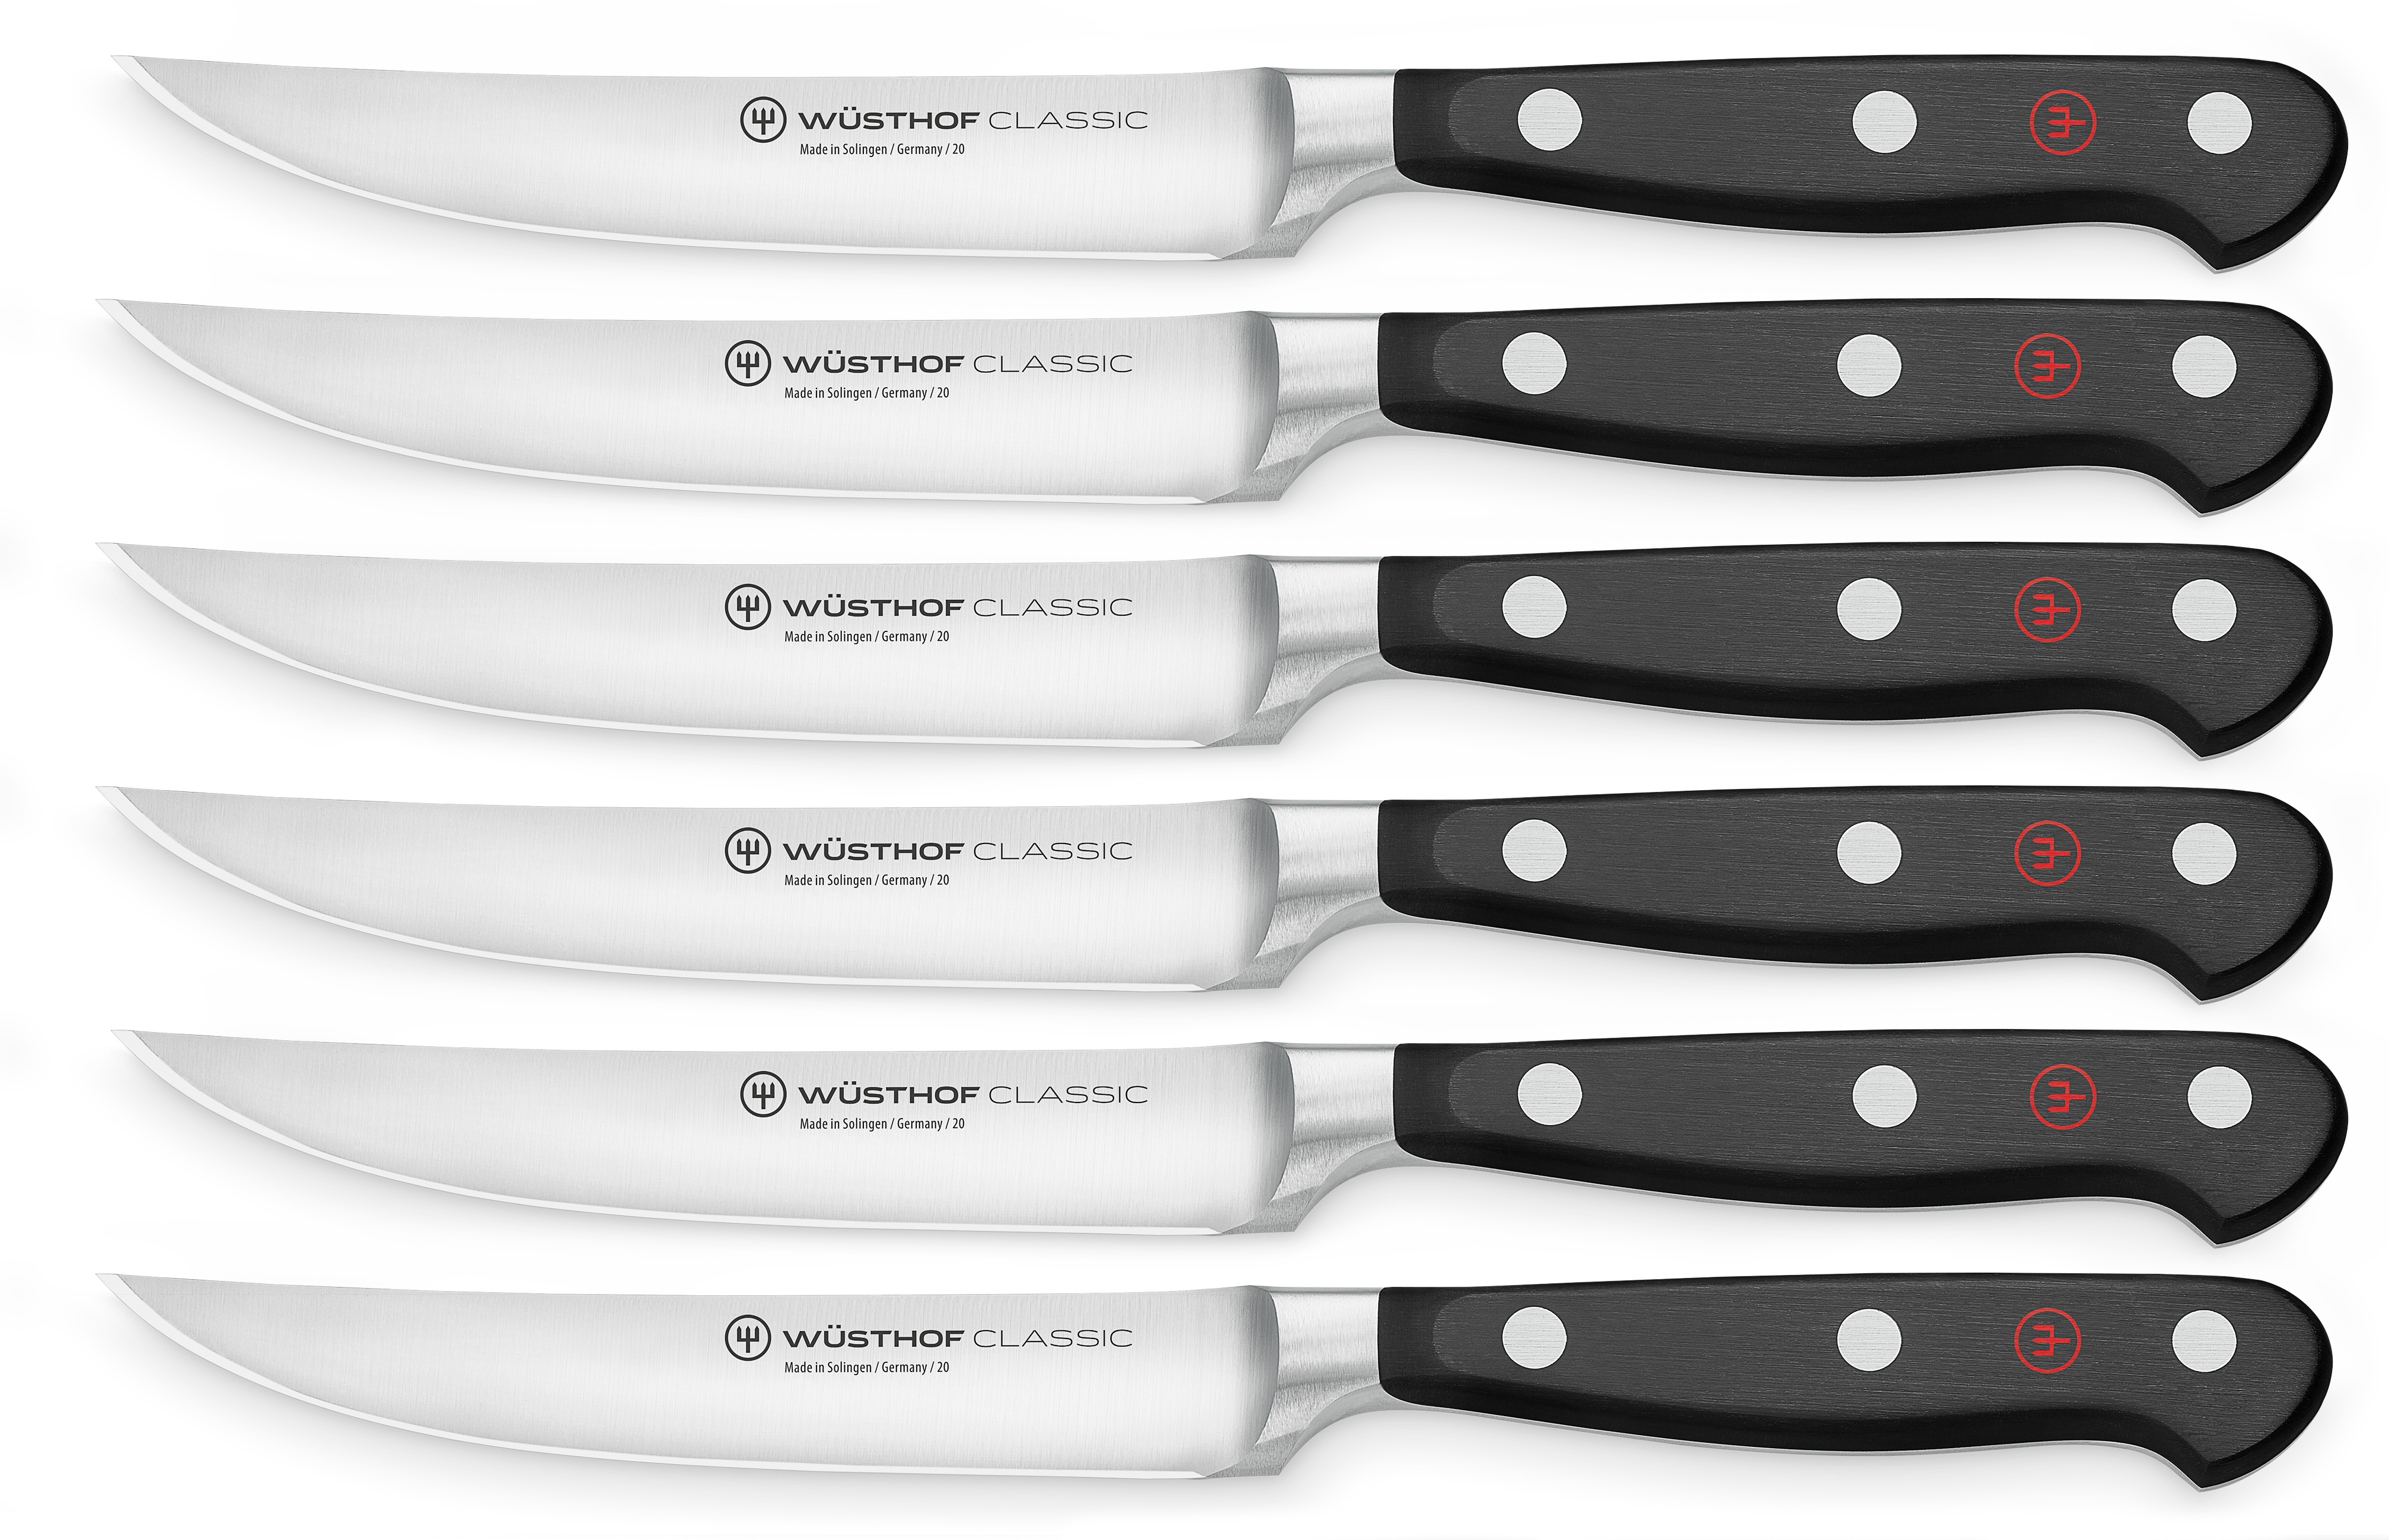 Steakmesser Set mit 6 Messern / Steak knife set with 6 knives